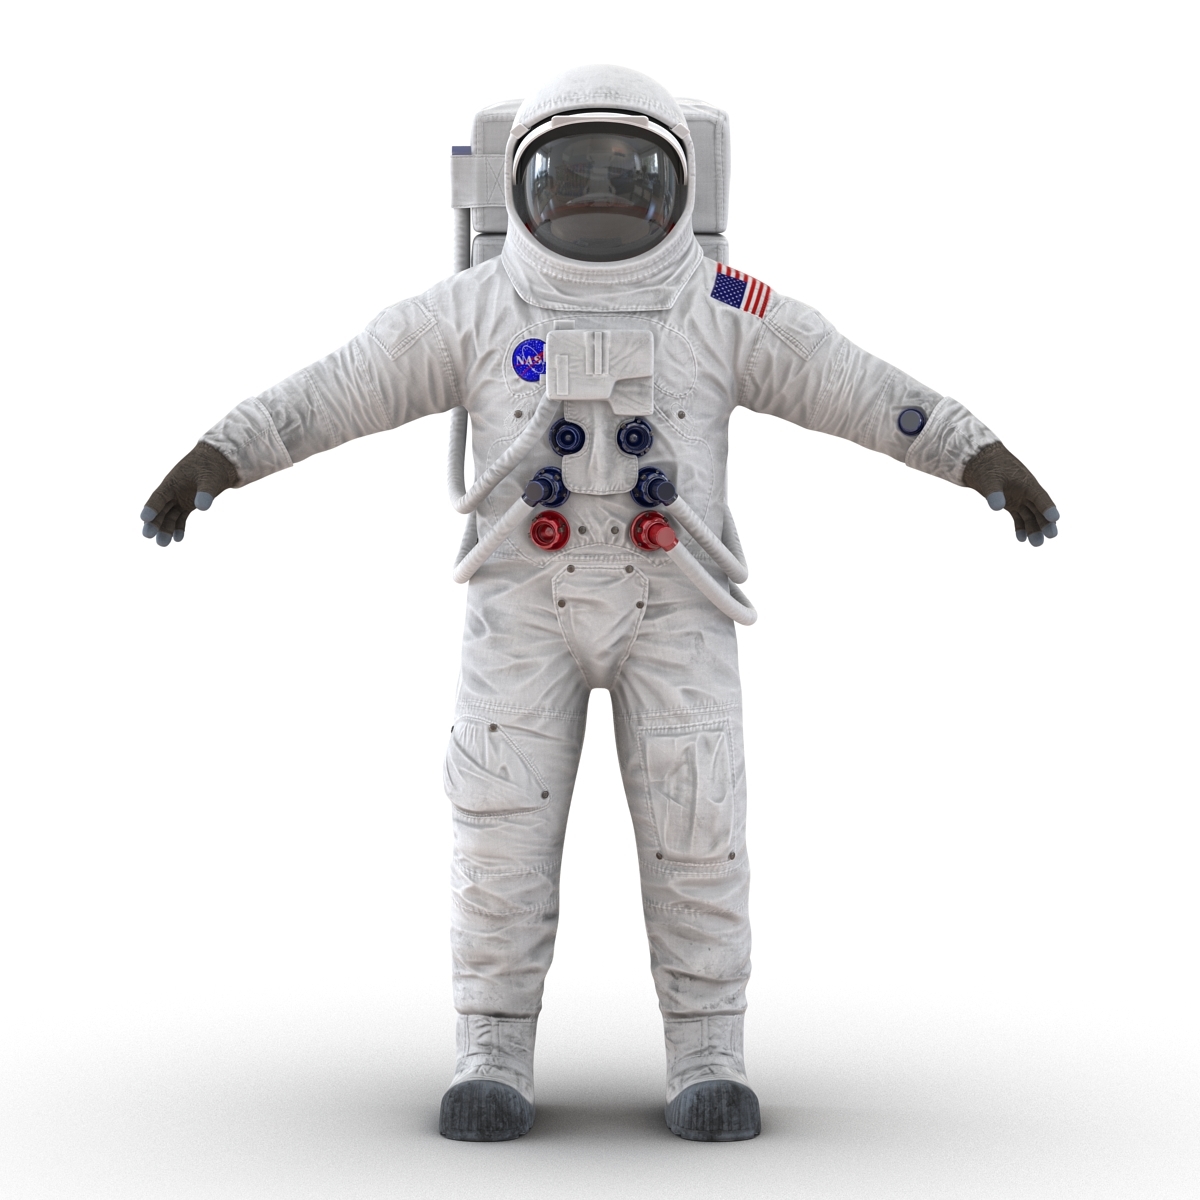 Найти скафандр. Скафандр Космонавта НАСА. Космический костюм. Костюм Космонавта. Костюм скафандр Космонавта.